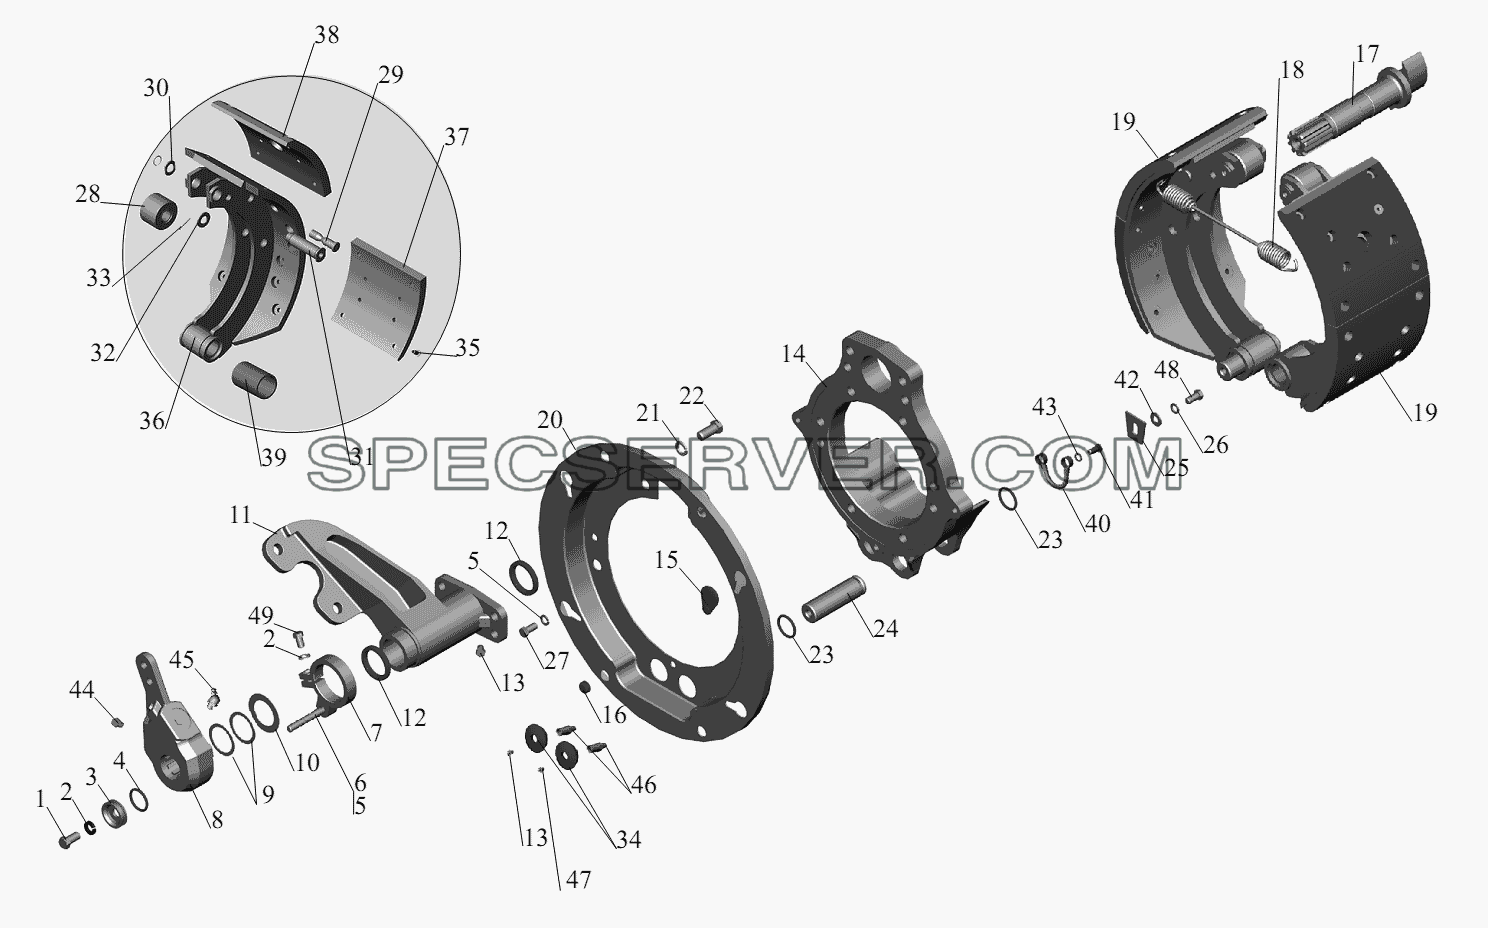 Тормозной механизм передних колес 152-3501004 (152-3501005) для МАЗ-6422, 5432 (список запасных частей)